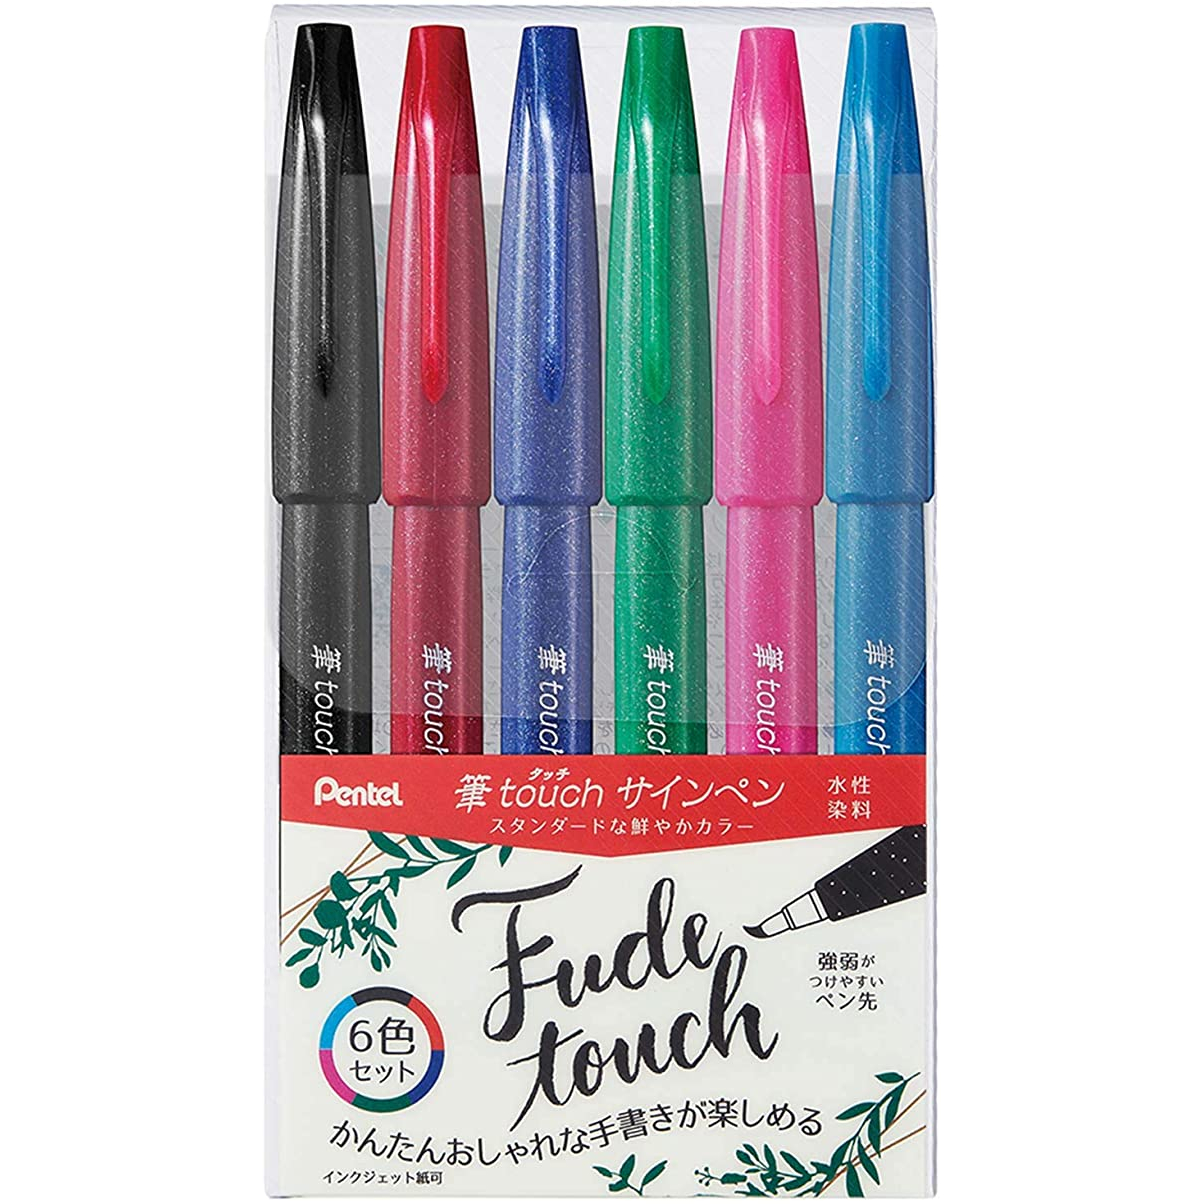 PENTEL Touch Brush Pen